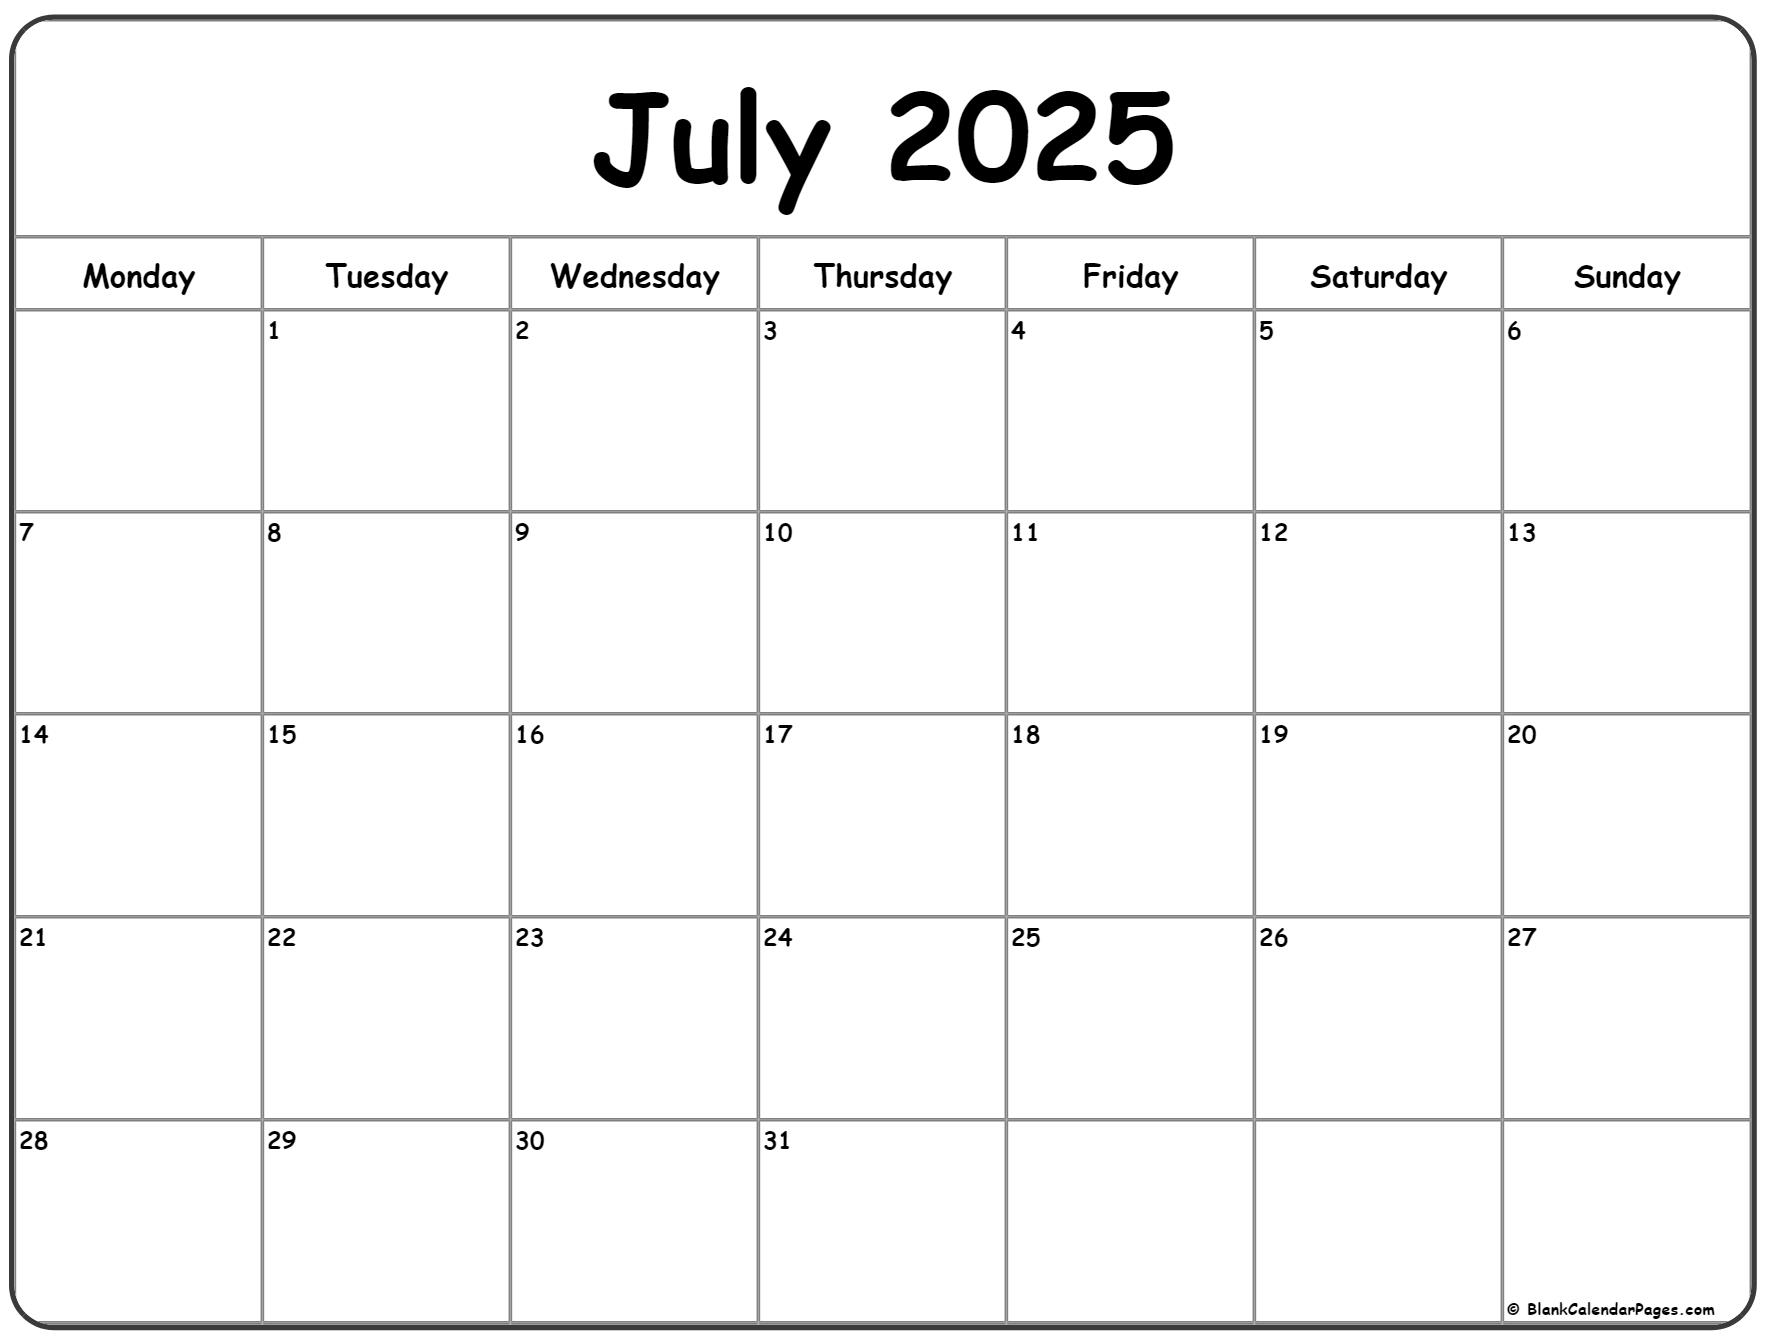 July 2025 Monday calendar. Monday to Sunday